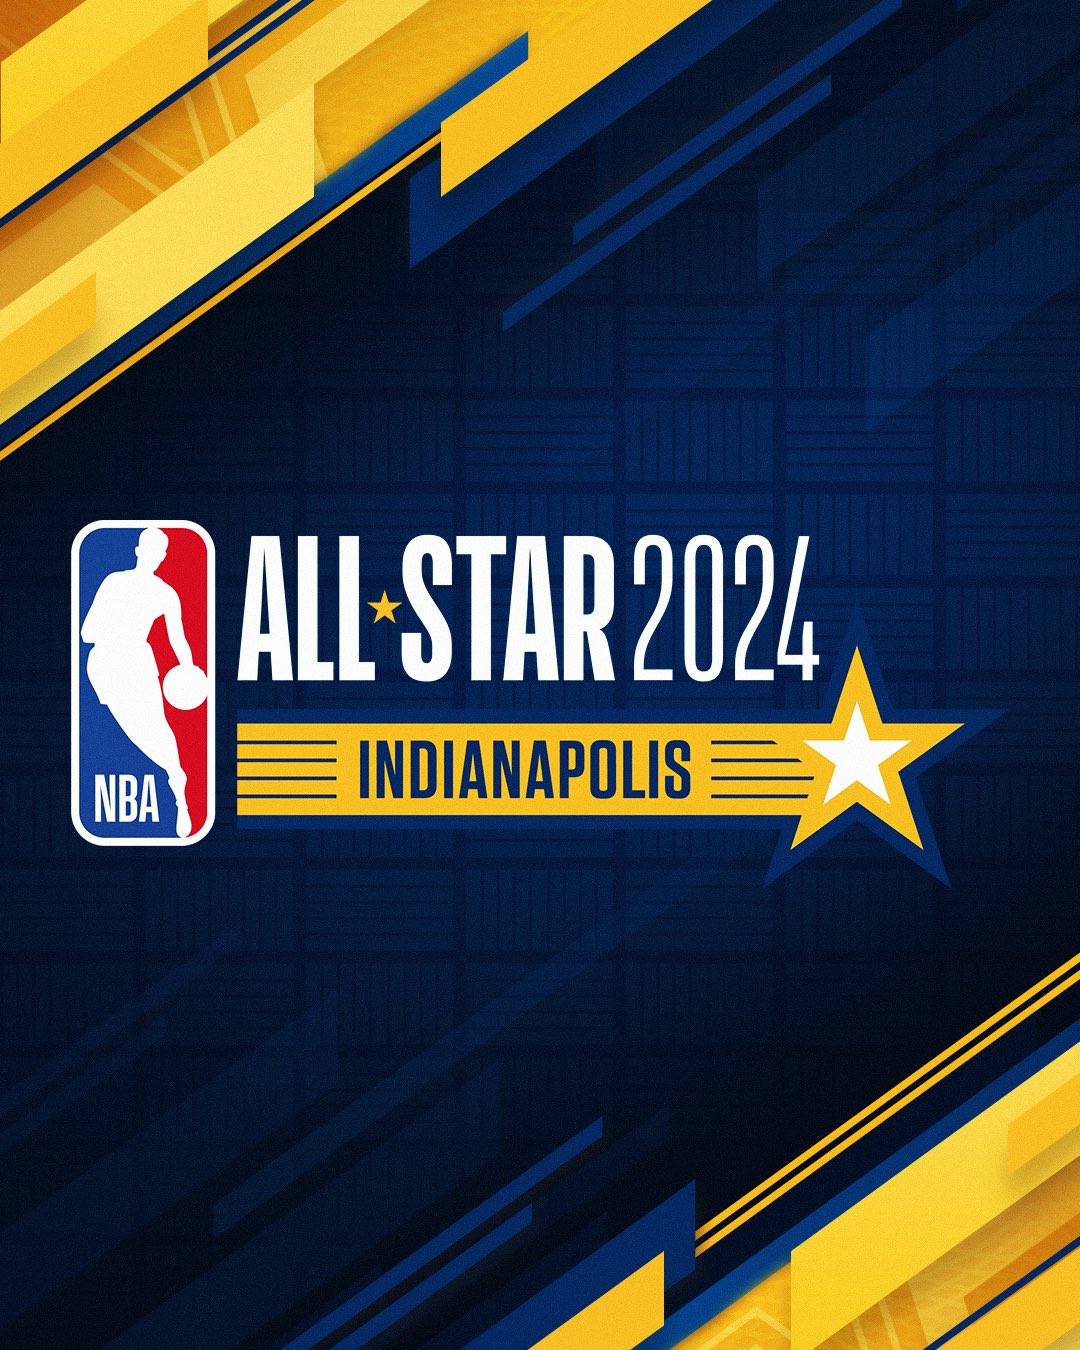 NBAAllStar on X: #NBAAllStar 2024 is in Indianapolis, IN! The